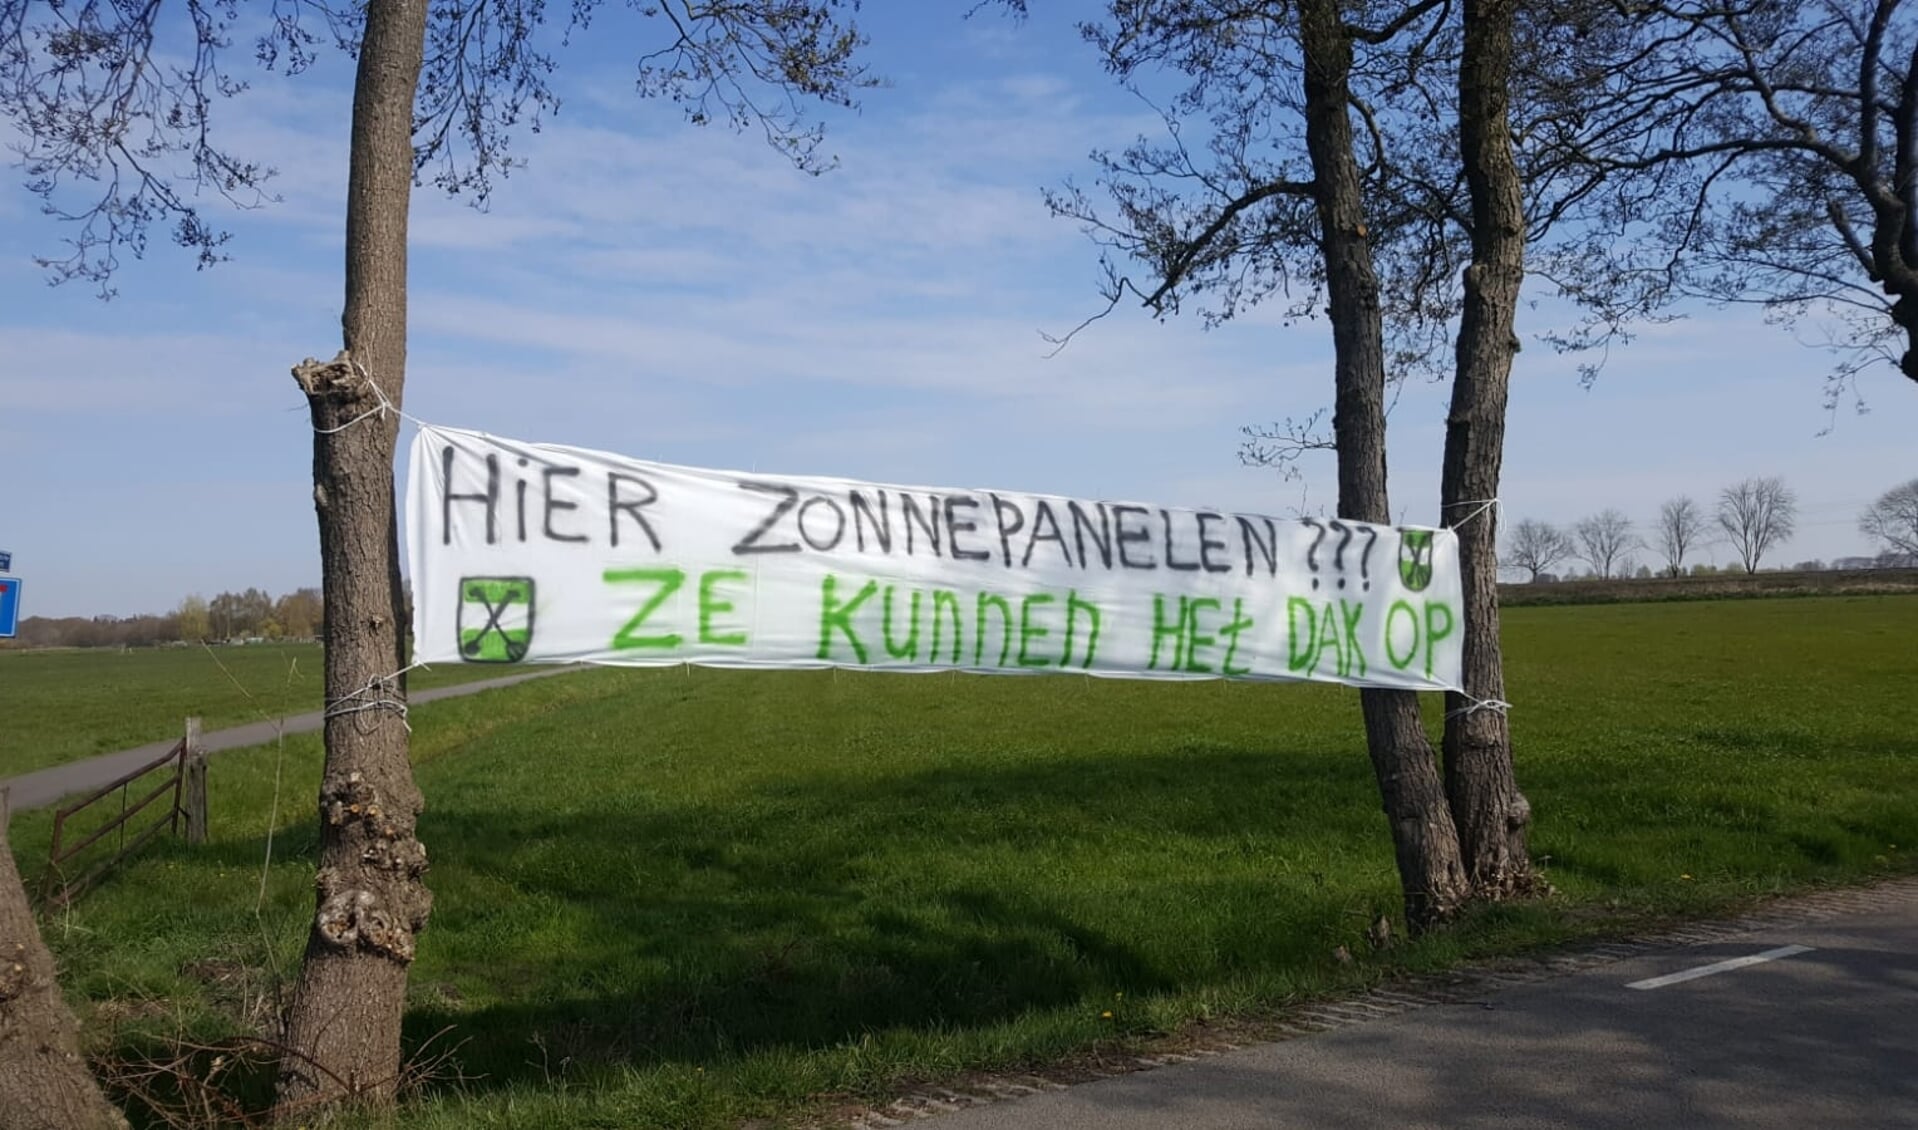 Volkstuinvereninging protesteert met spandoek tegen zonnepanelen in de polder